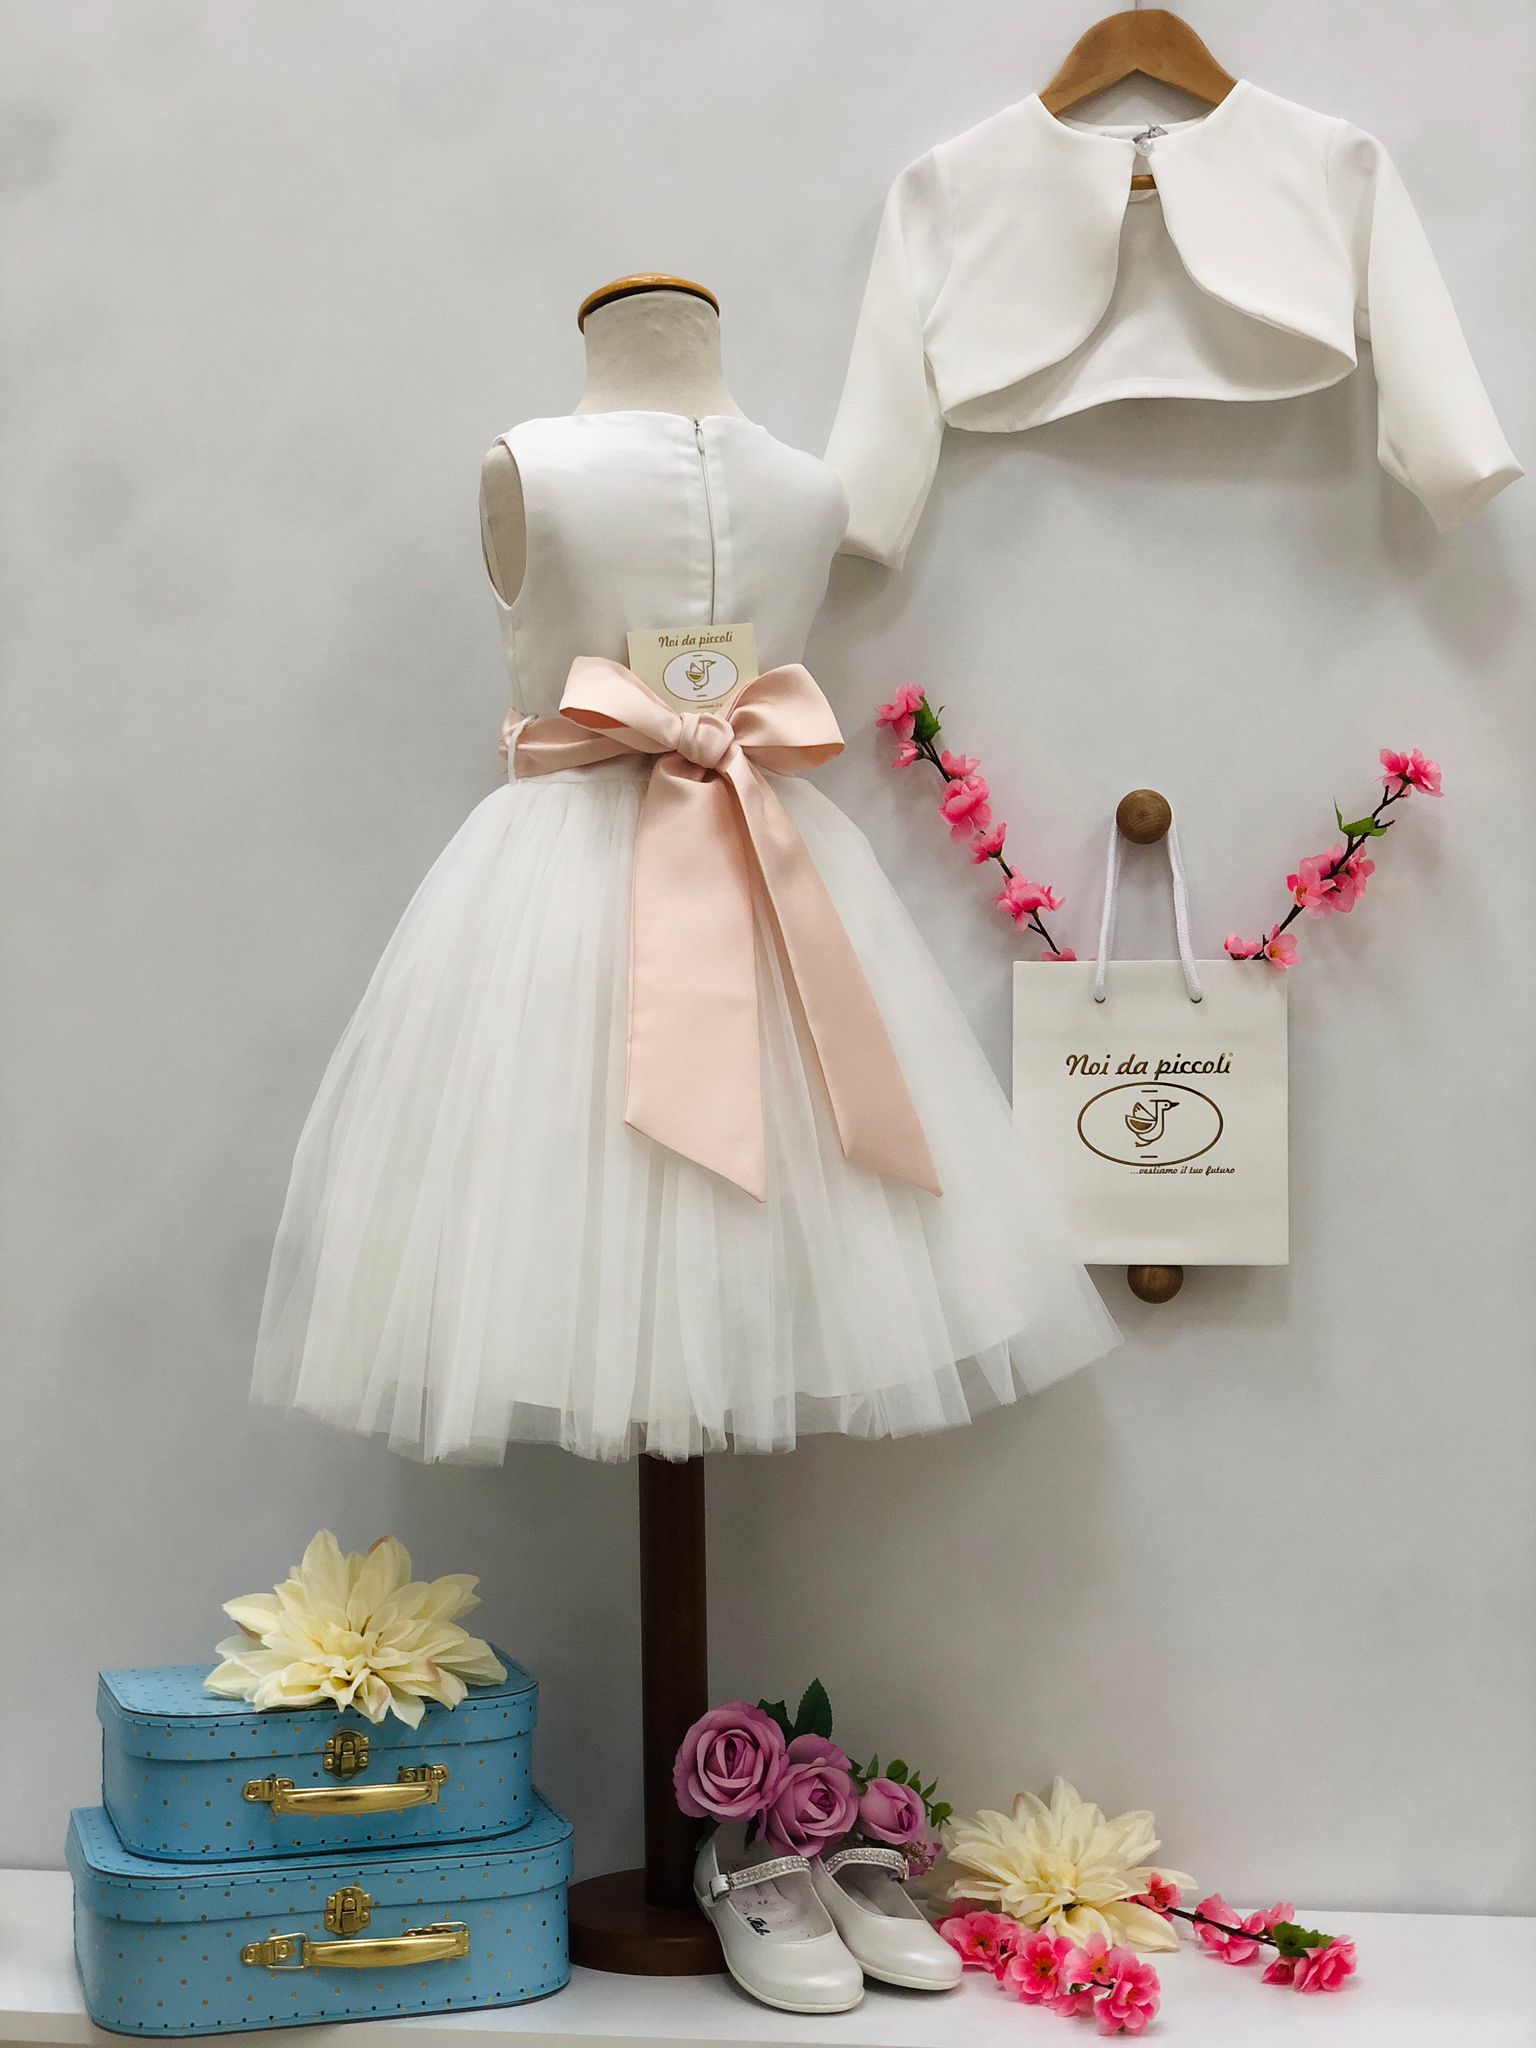 ELEGANT WHITE DRESS WITH HEADBAND FULL OF ROSES